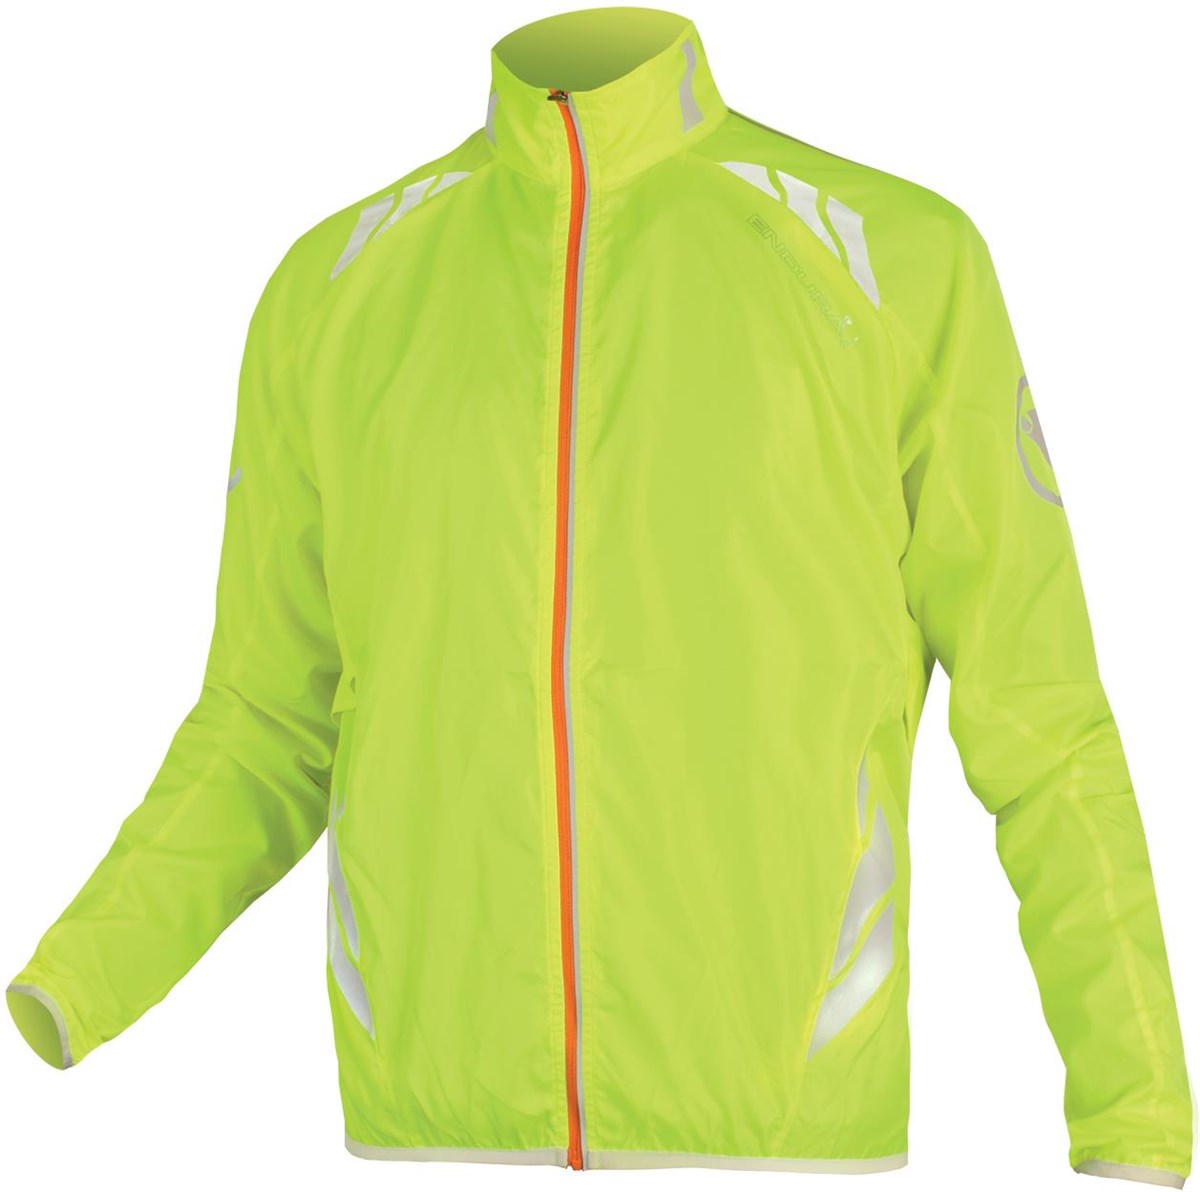 Endura Lumijak Windproof Cycling Jacket product image